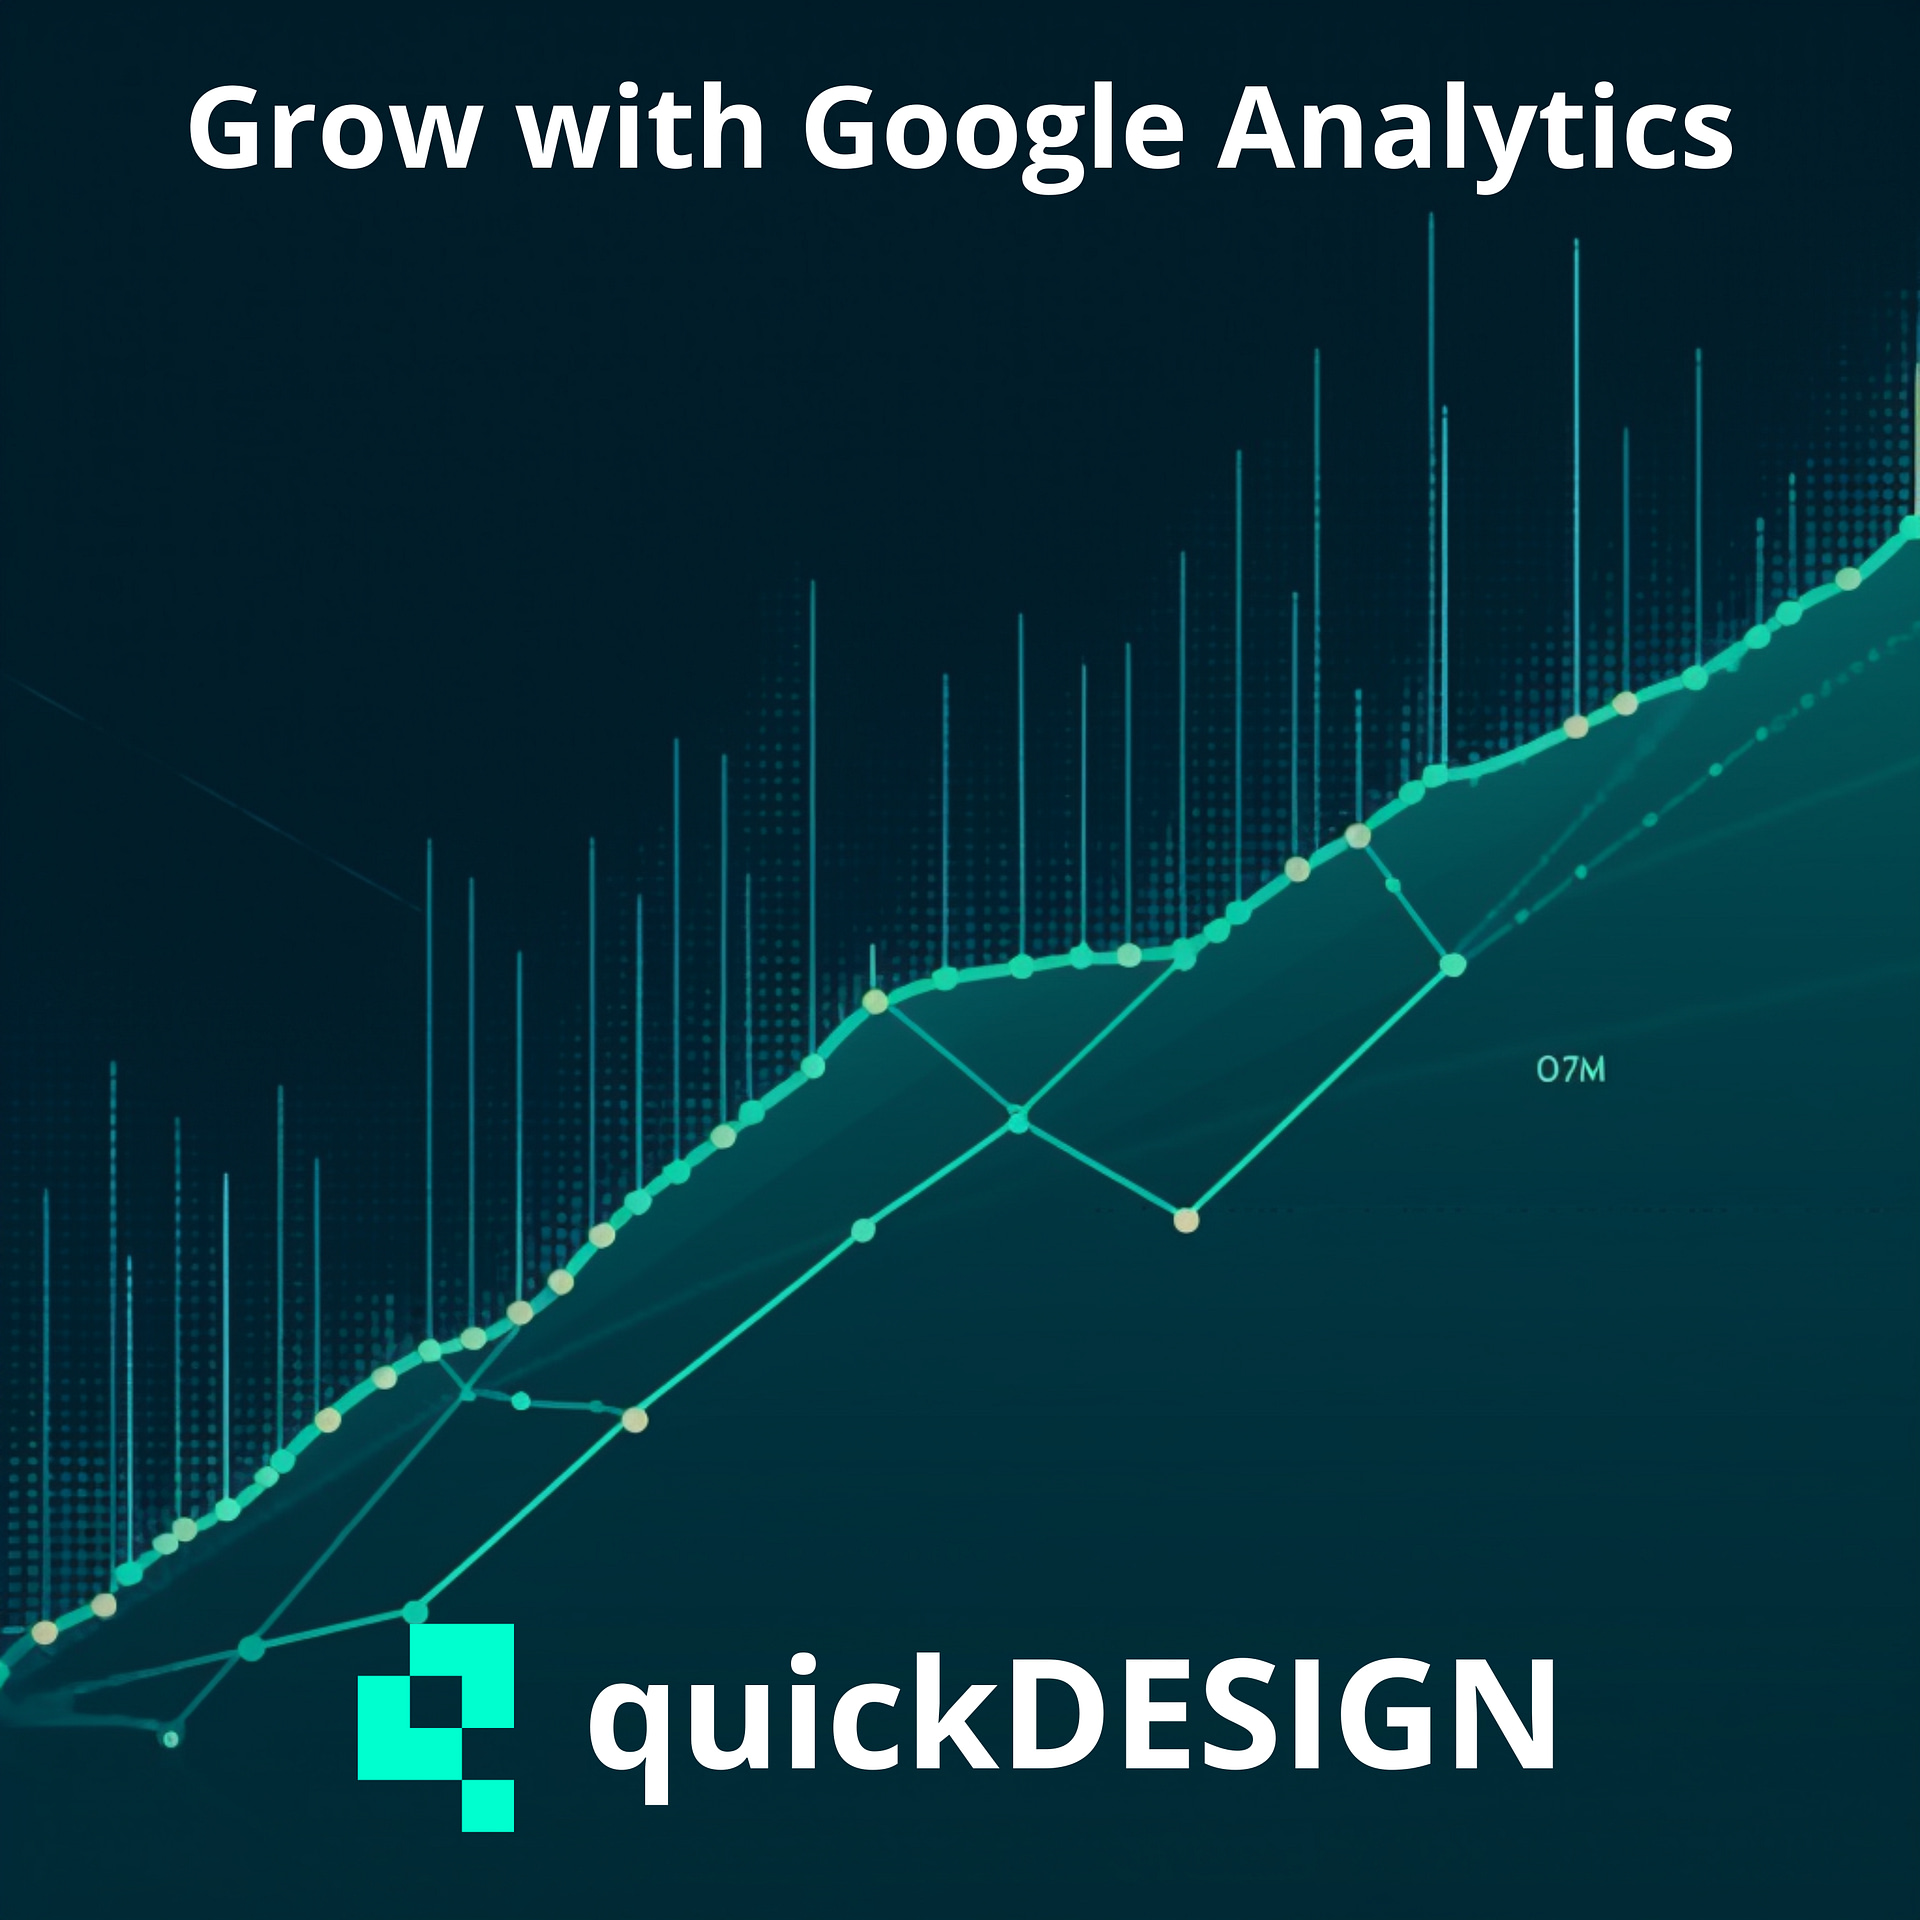 Illustratie van een groeiende lijngrafiek, symbool voor websitegroei en optimalisatie door Google Analytics.